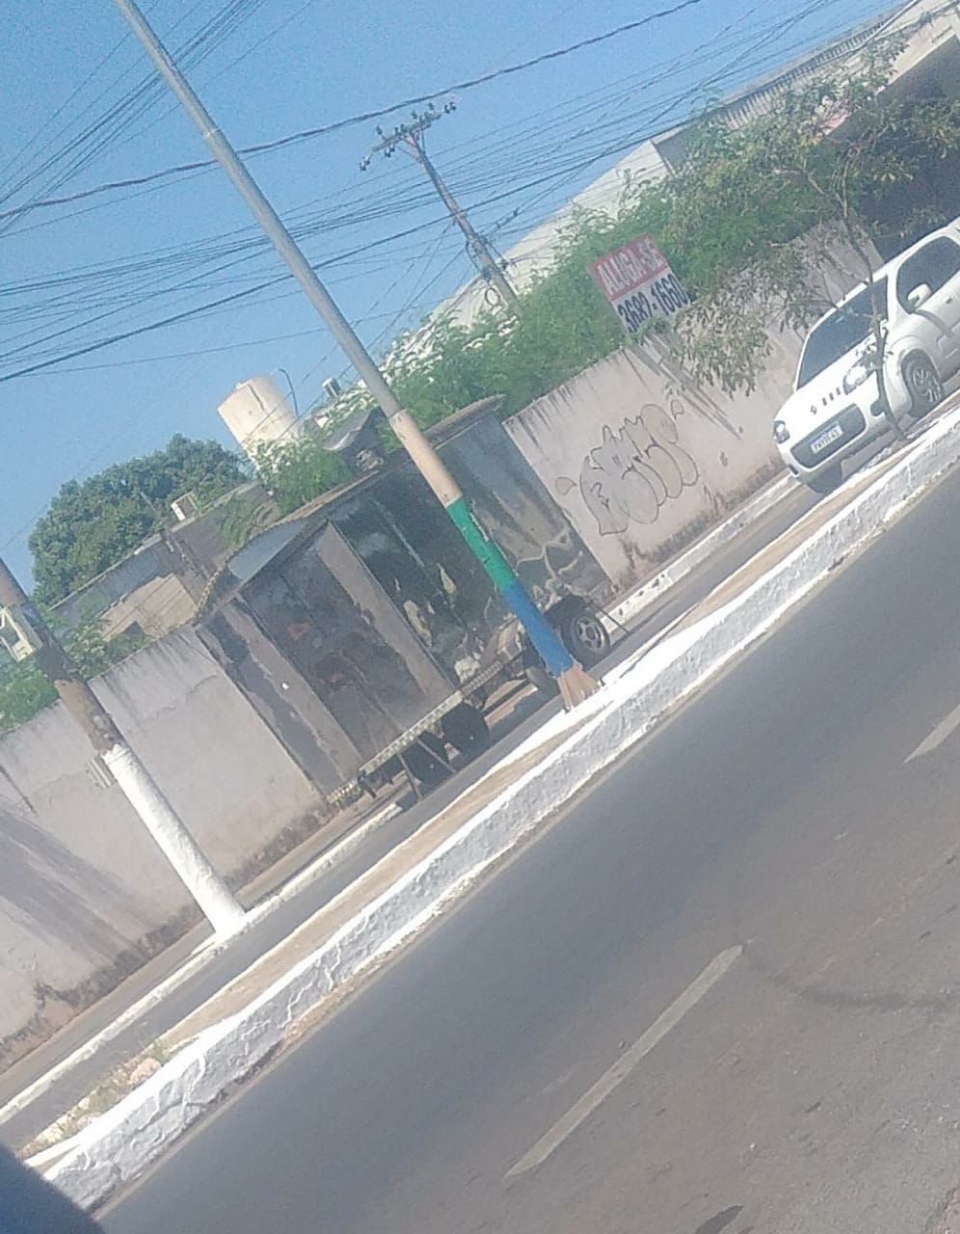 Trailer de 'baguncinha'  furtado em avenida de Vrzea Grande;  veja vdeos